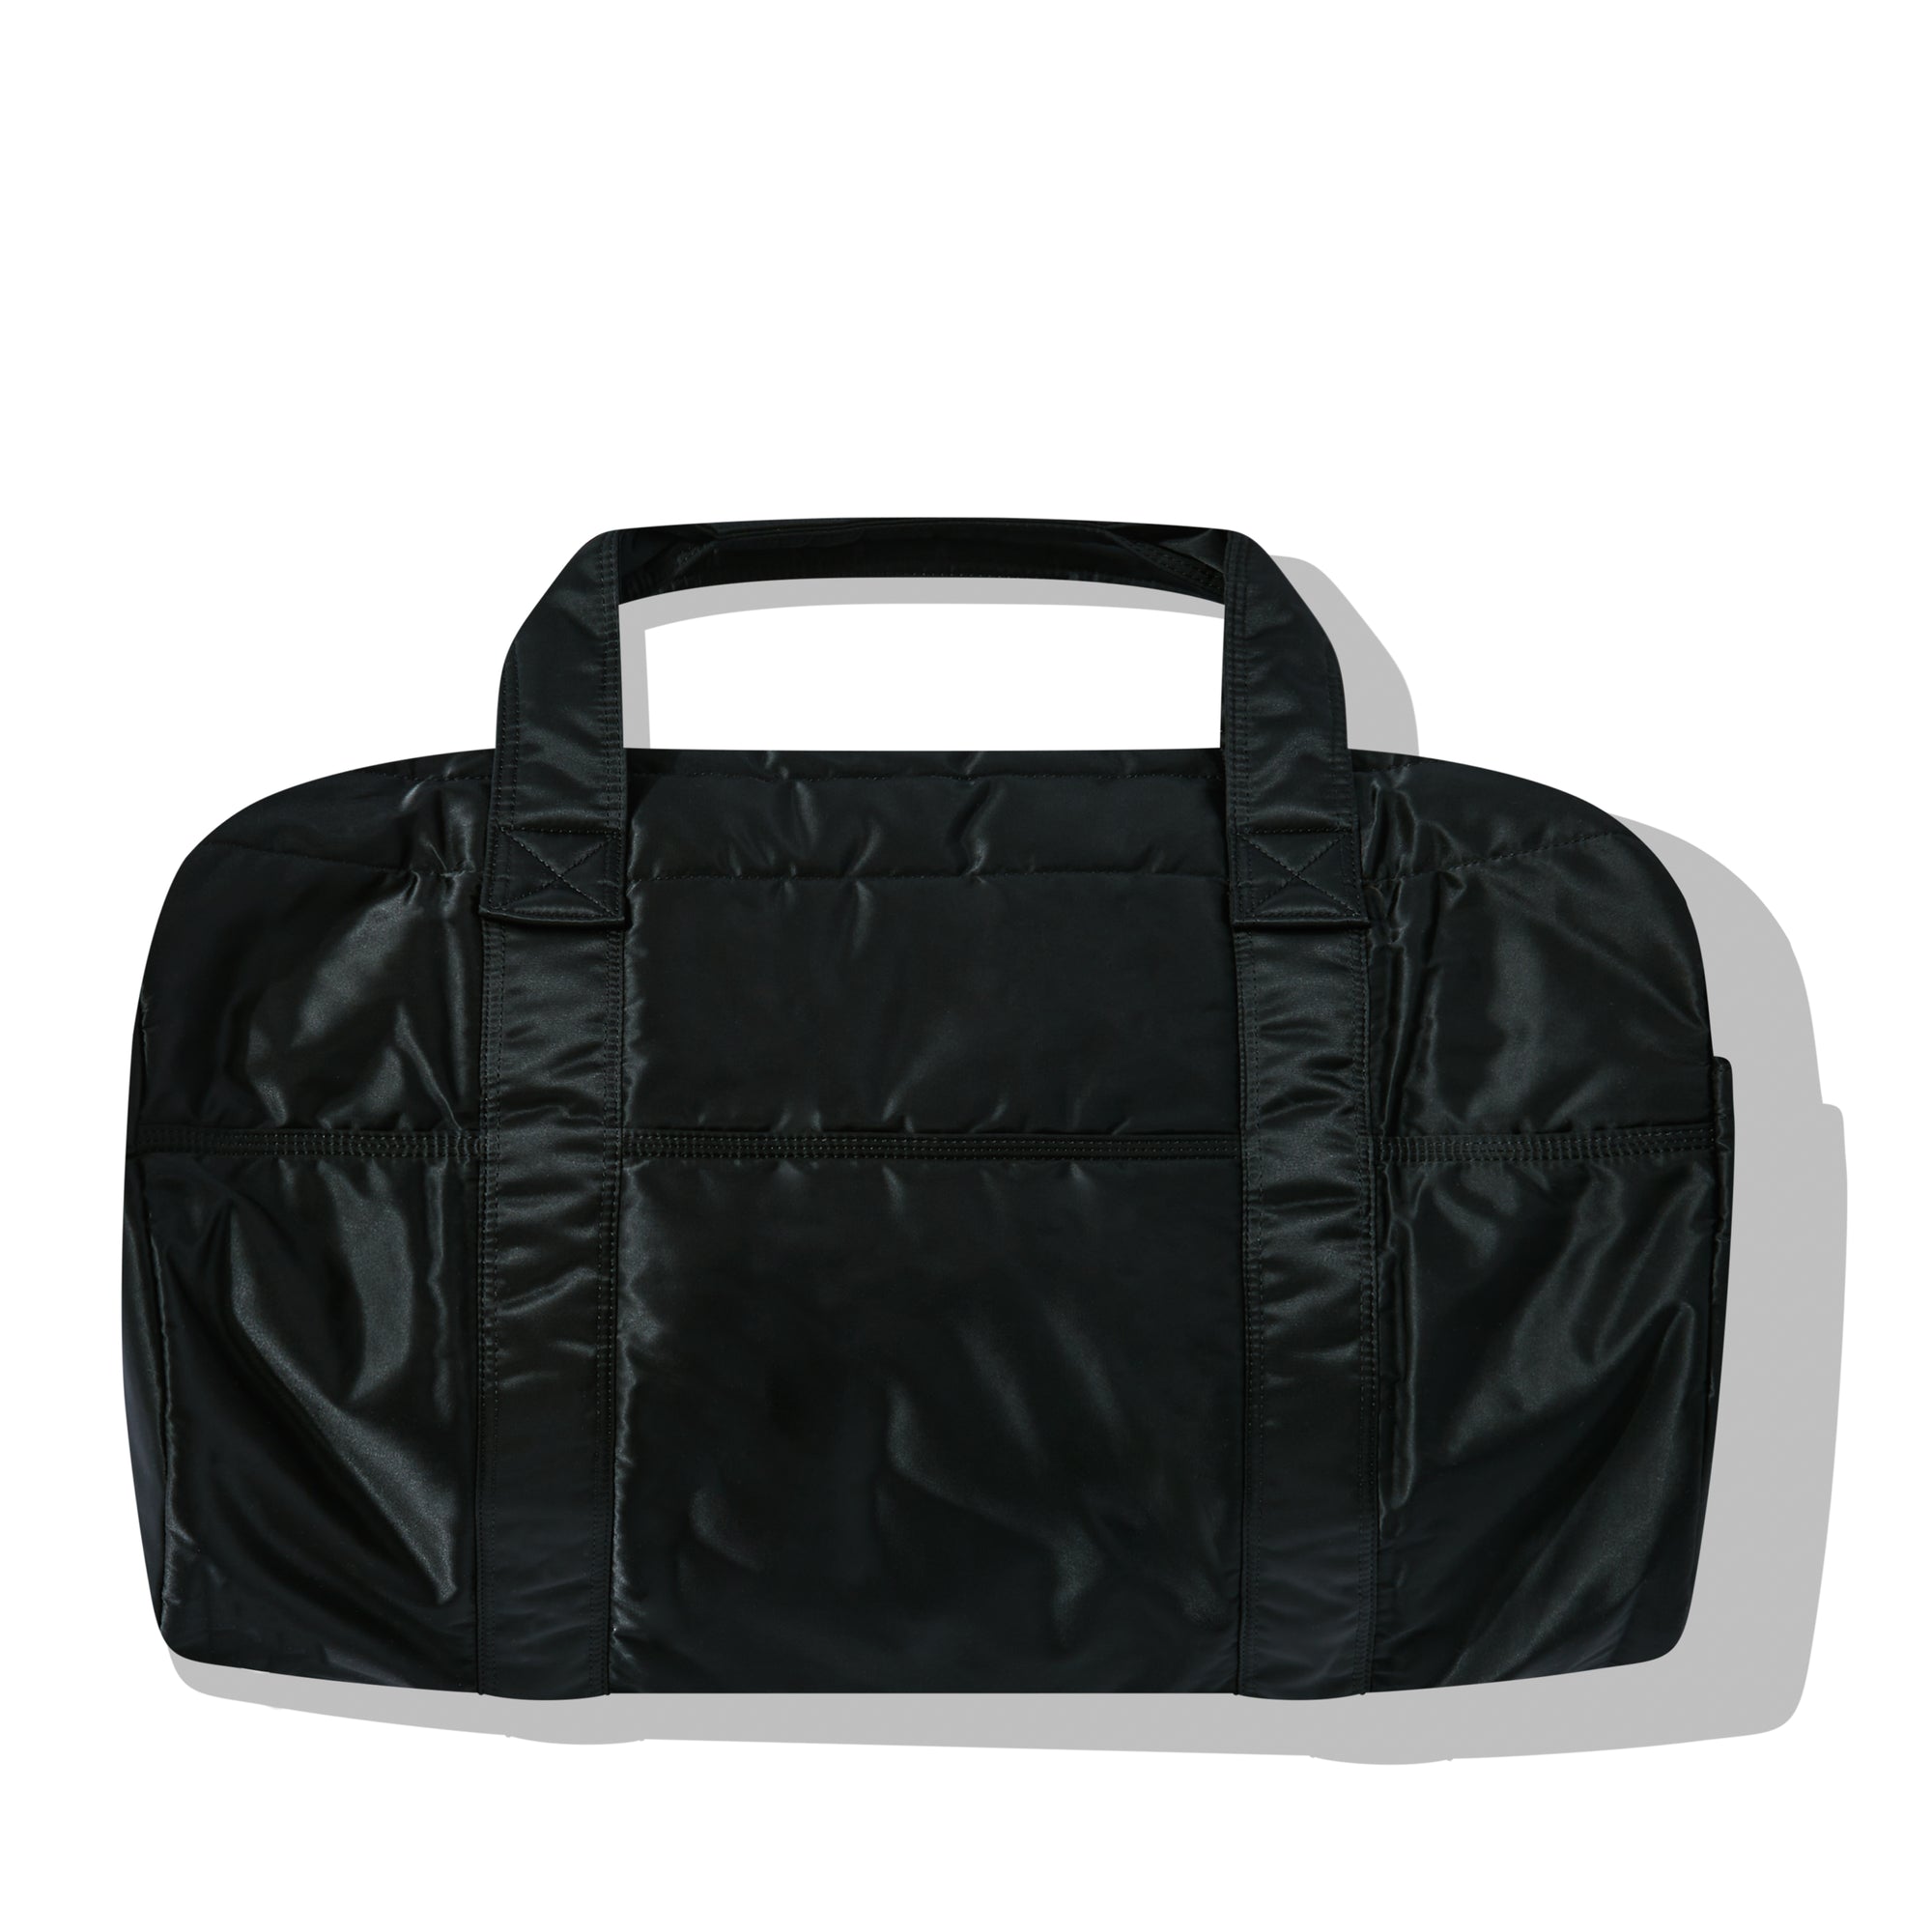 Porter-Yoshida & Co. - Tanker 2Way Duffle Bag (M) - (Black) view 2